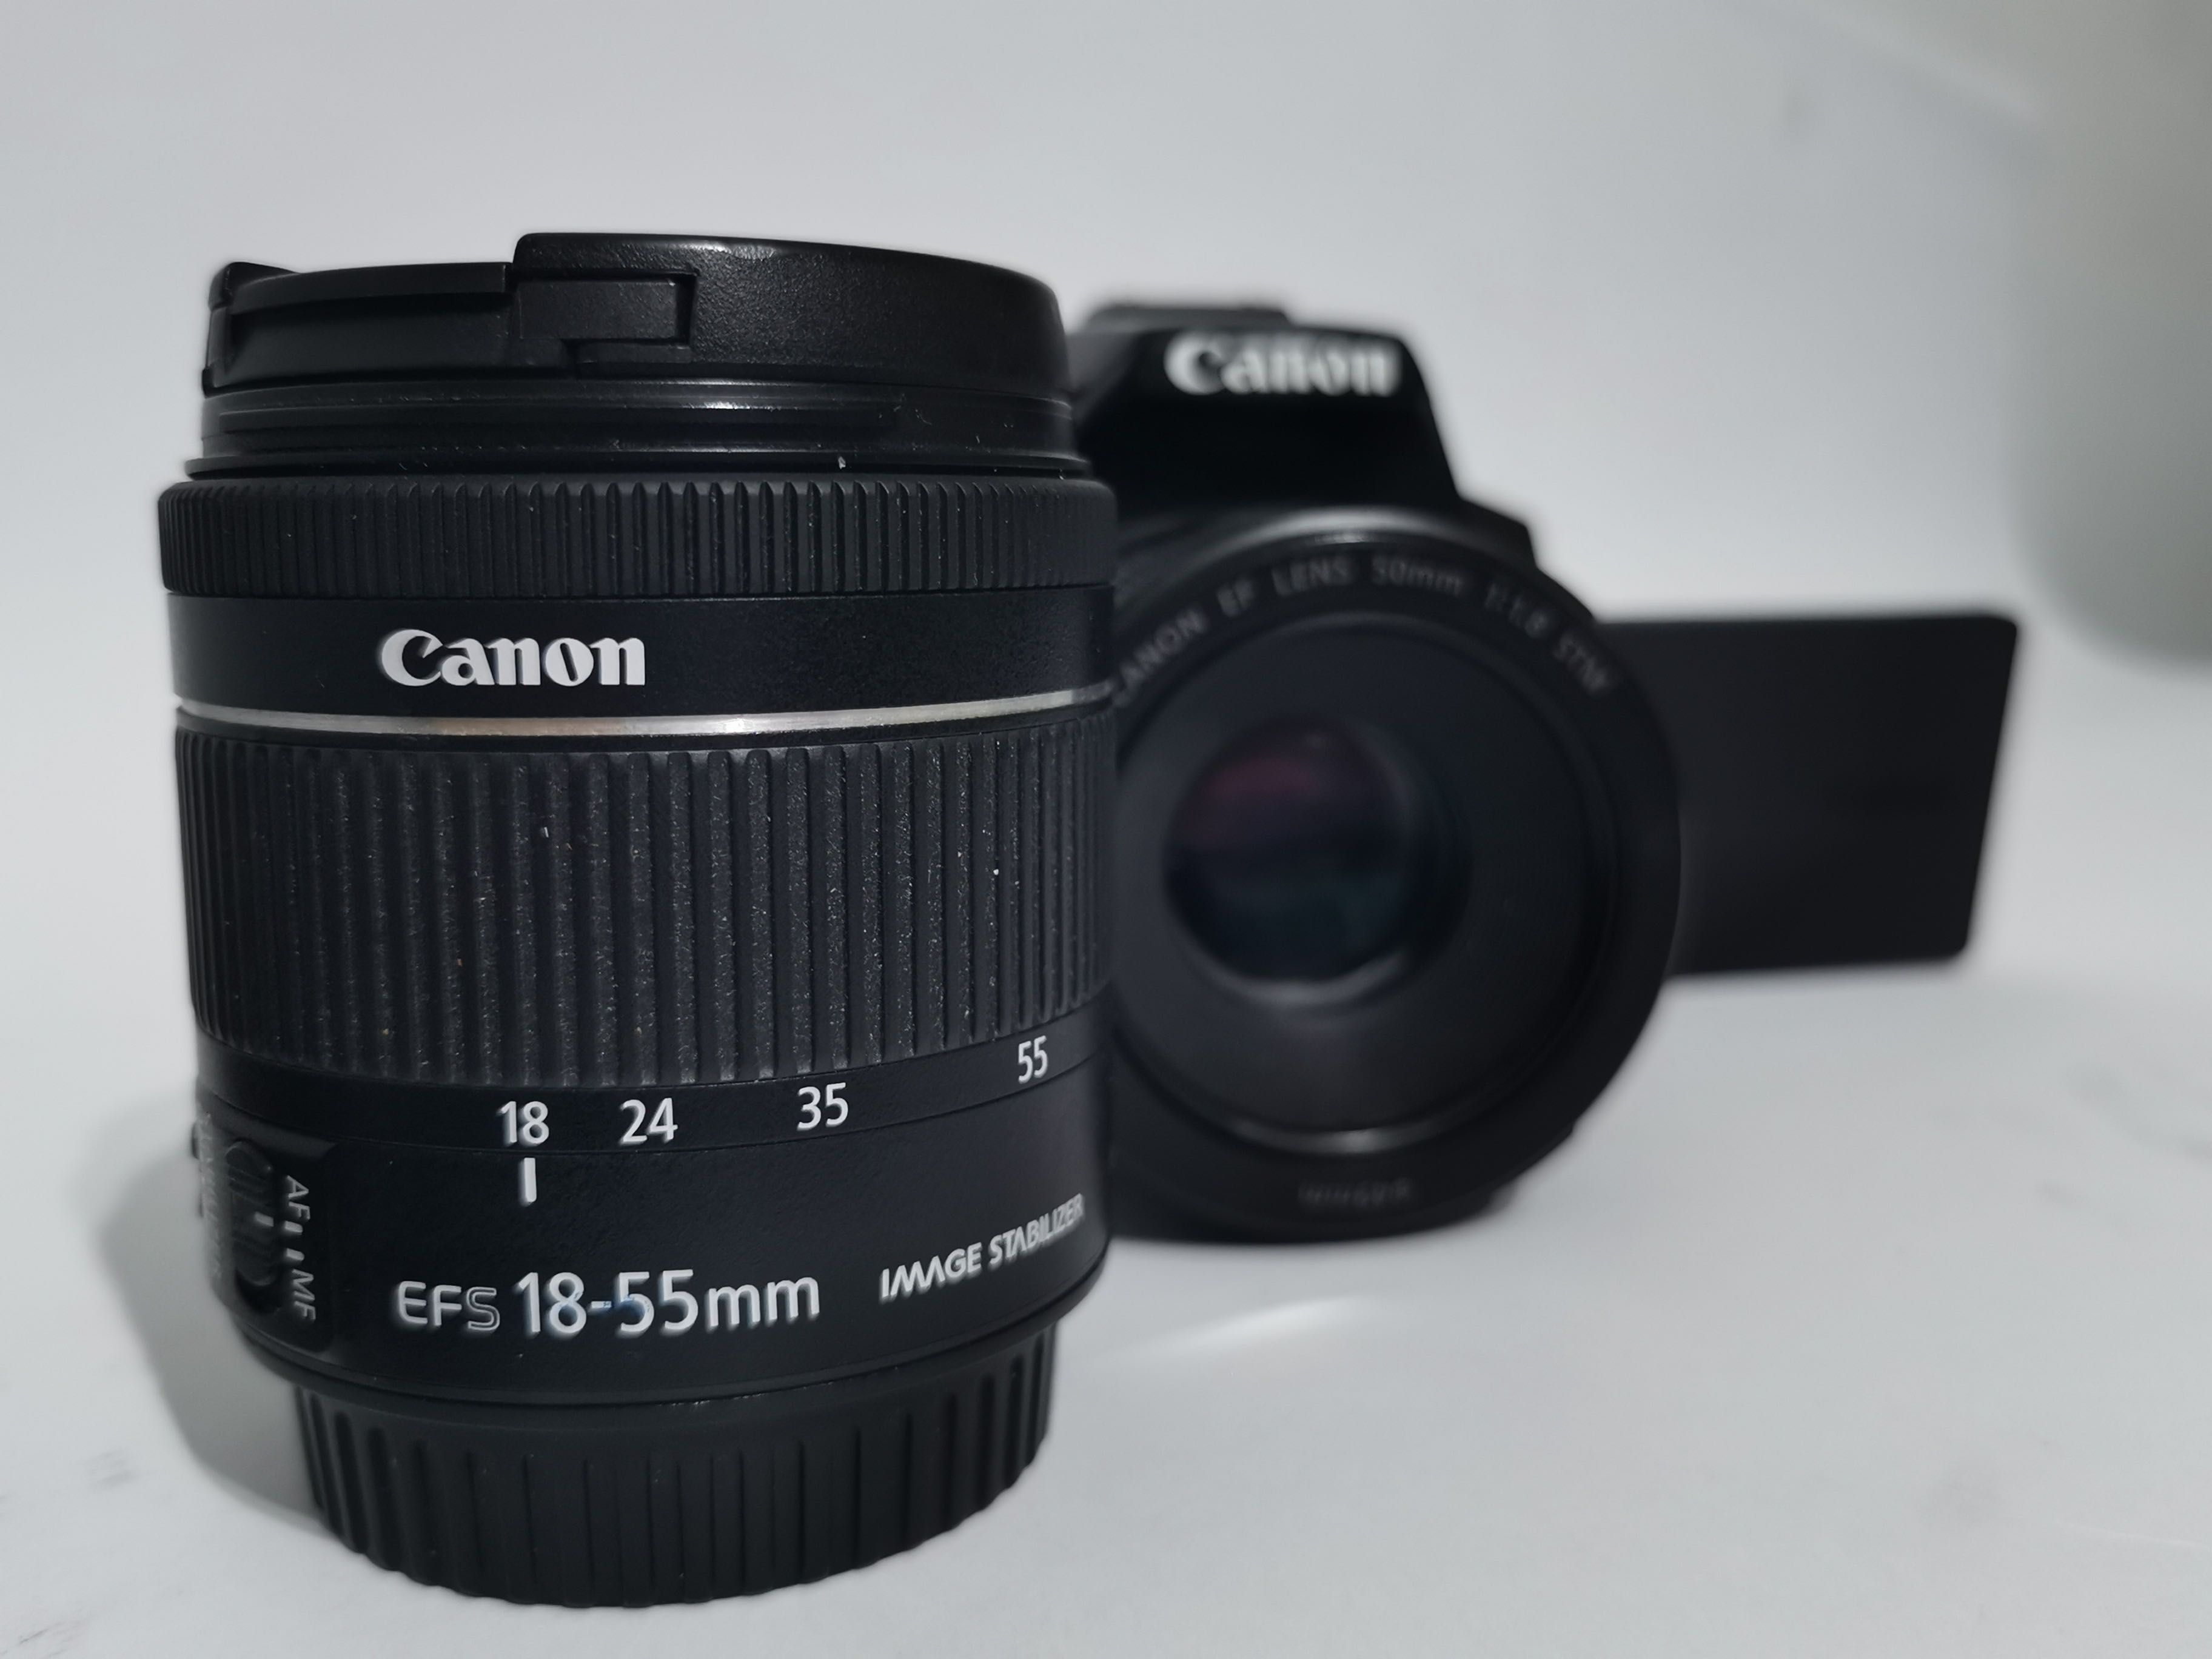 Canon EOS 250D Kit Lens + 50mm Lens